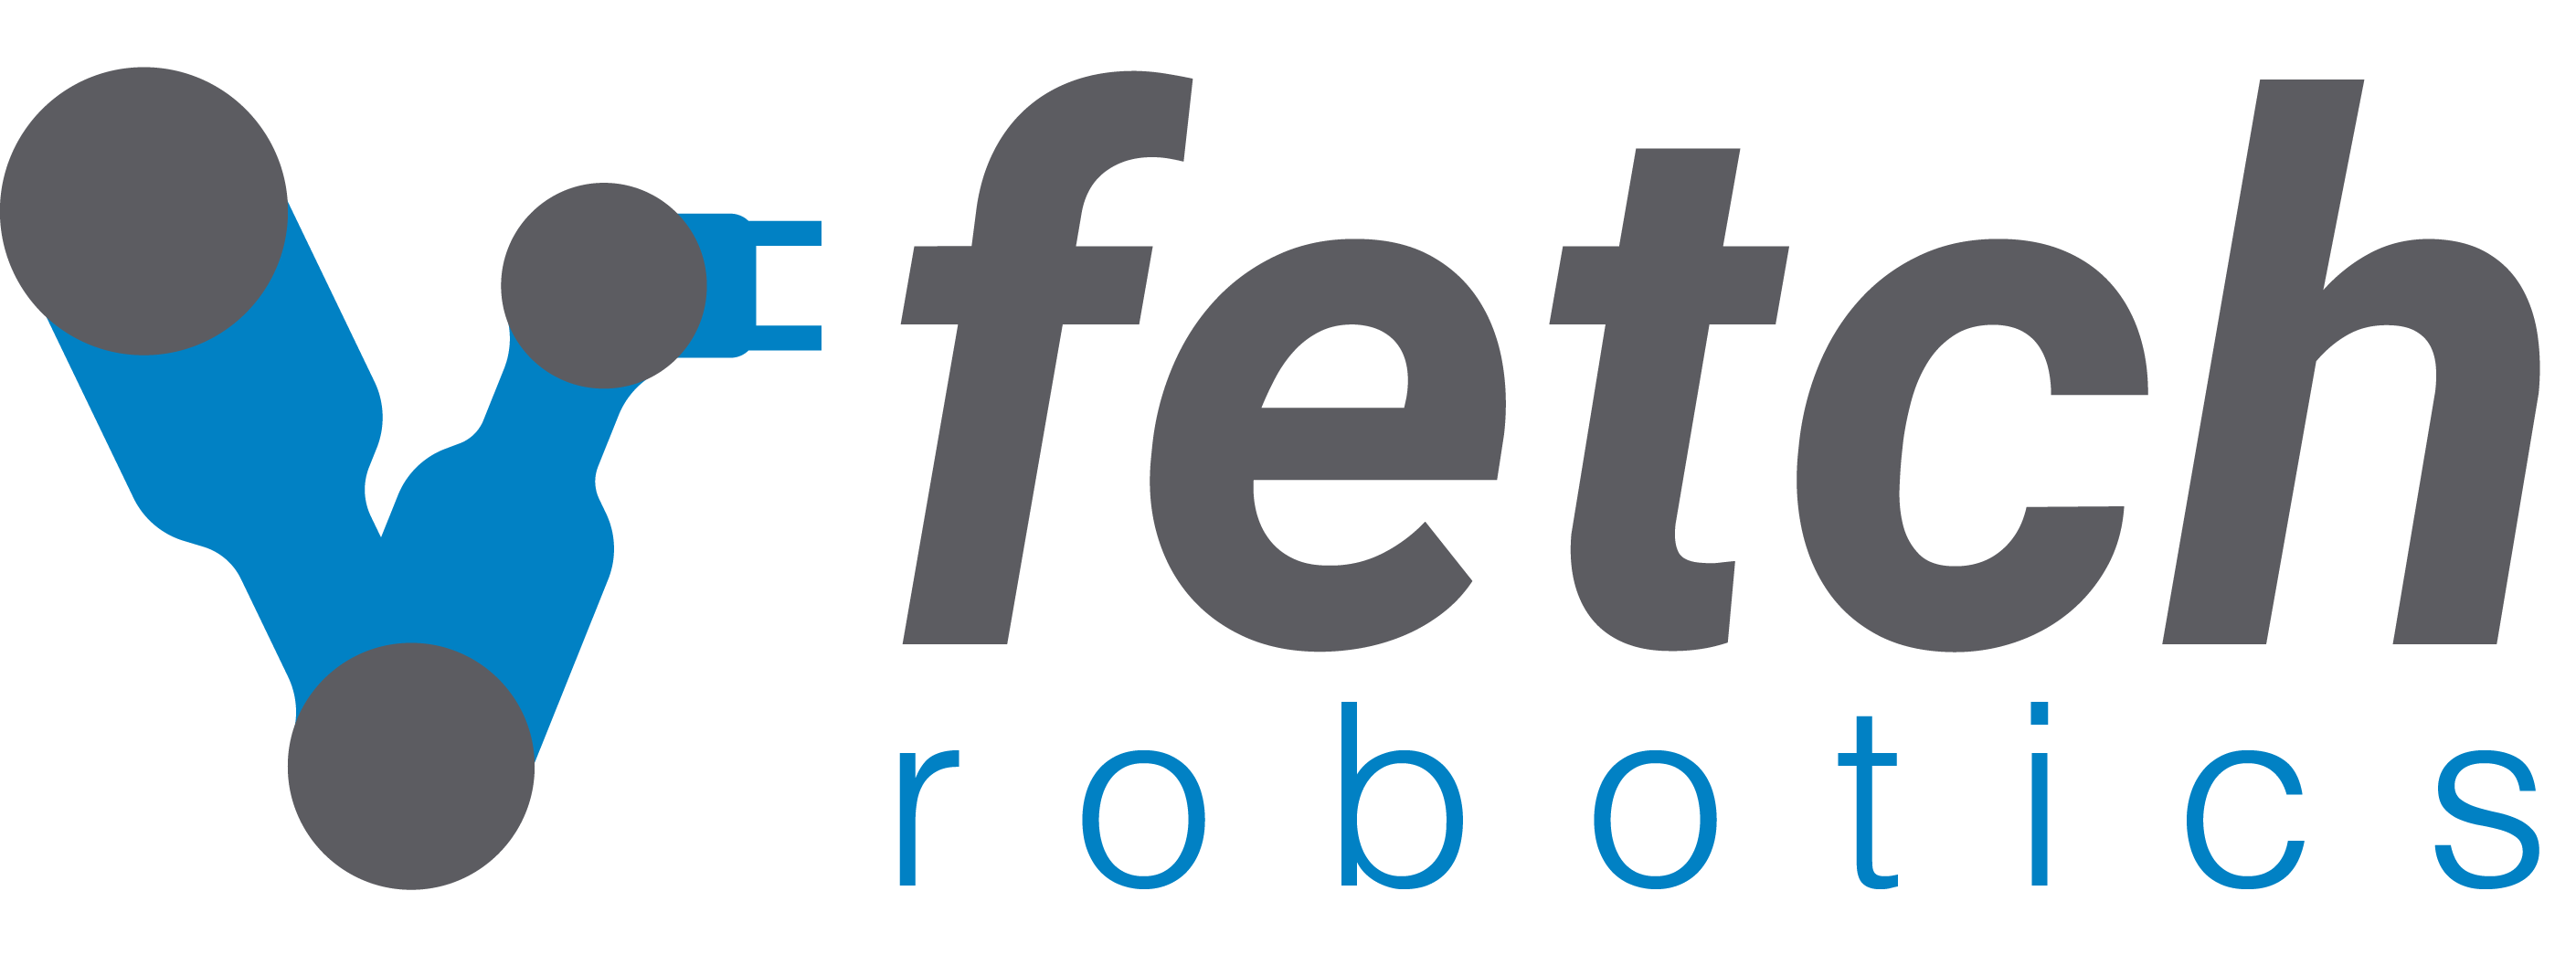 fetch_logo